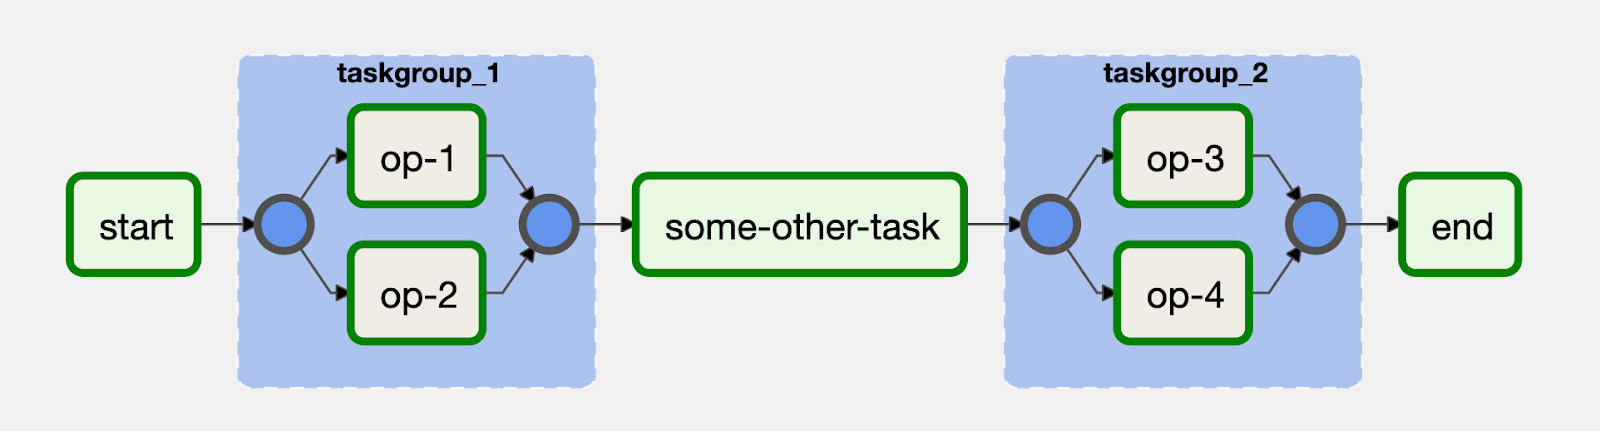 Las tareas se pueden agrupar visualmente en la IU con el operador TaskGroup en Airflow 2